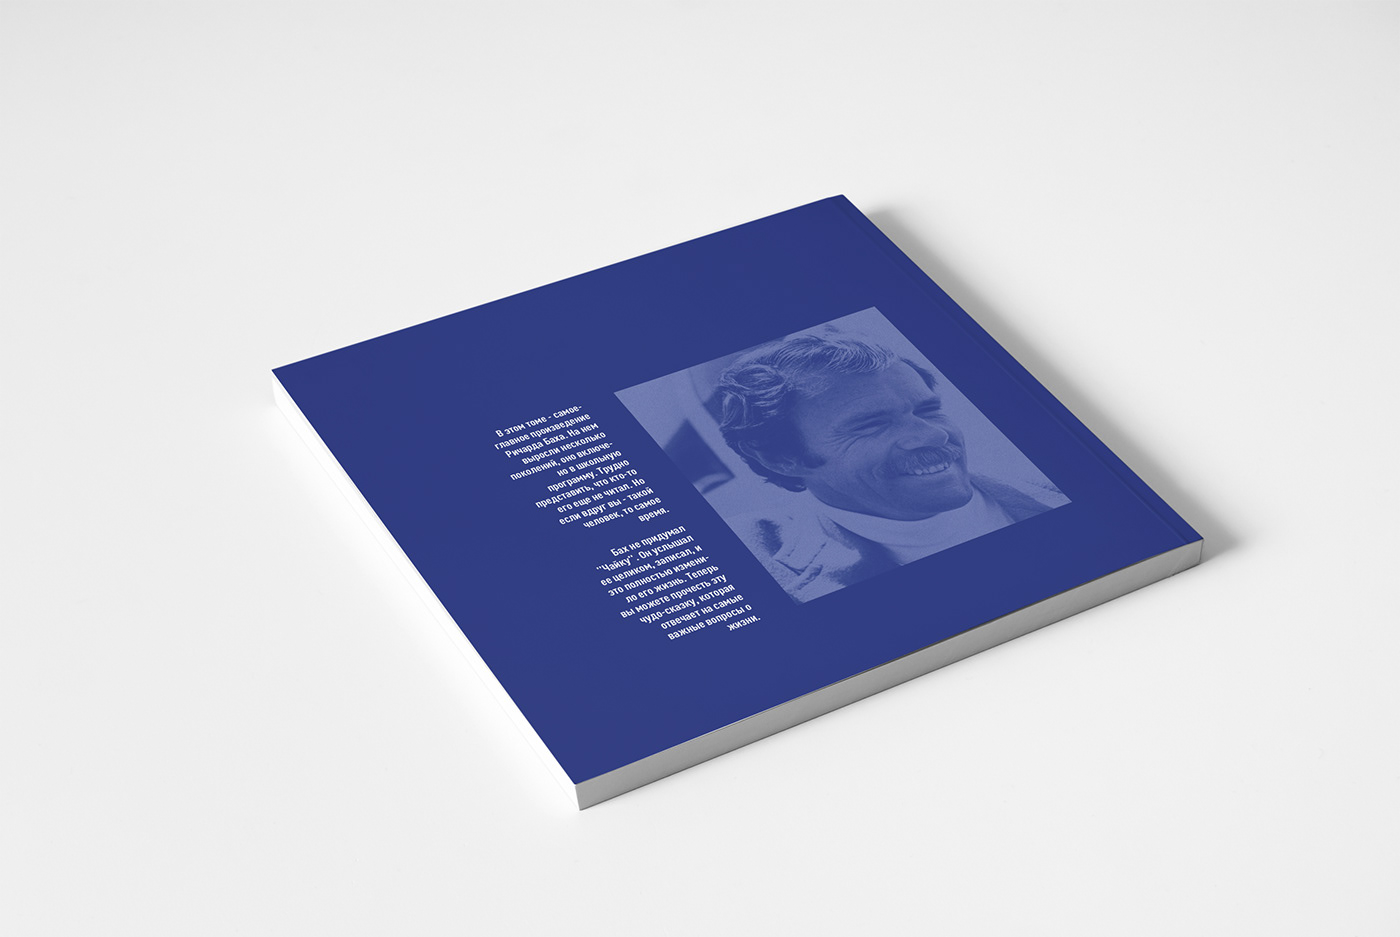 book book design poligrafic design grafic design design Jonatan Livingston Seagull